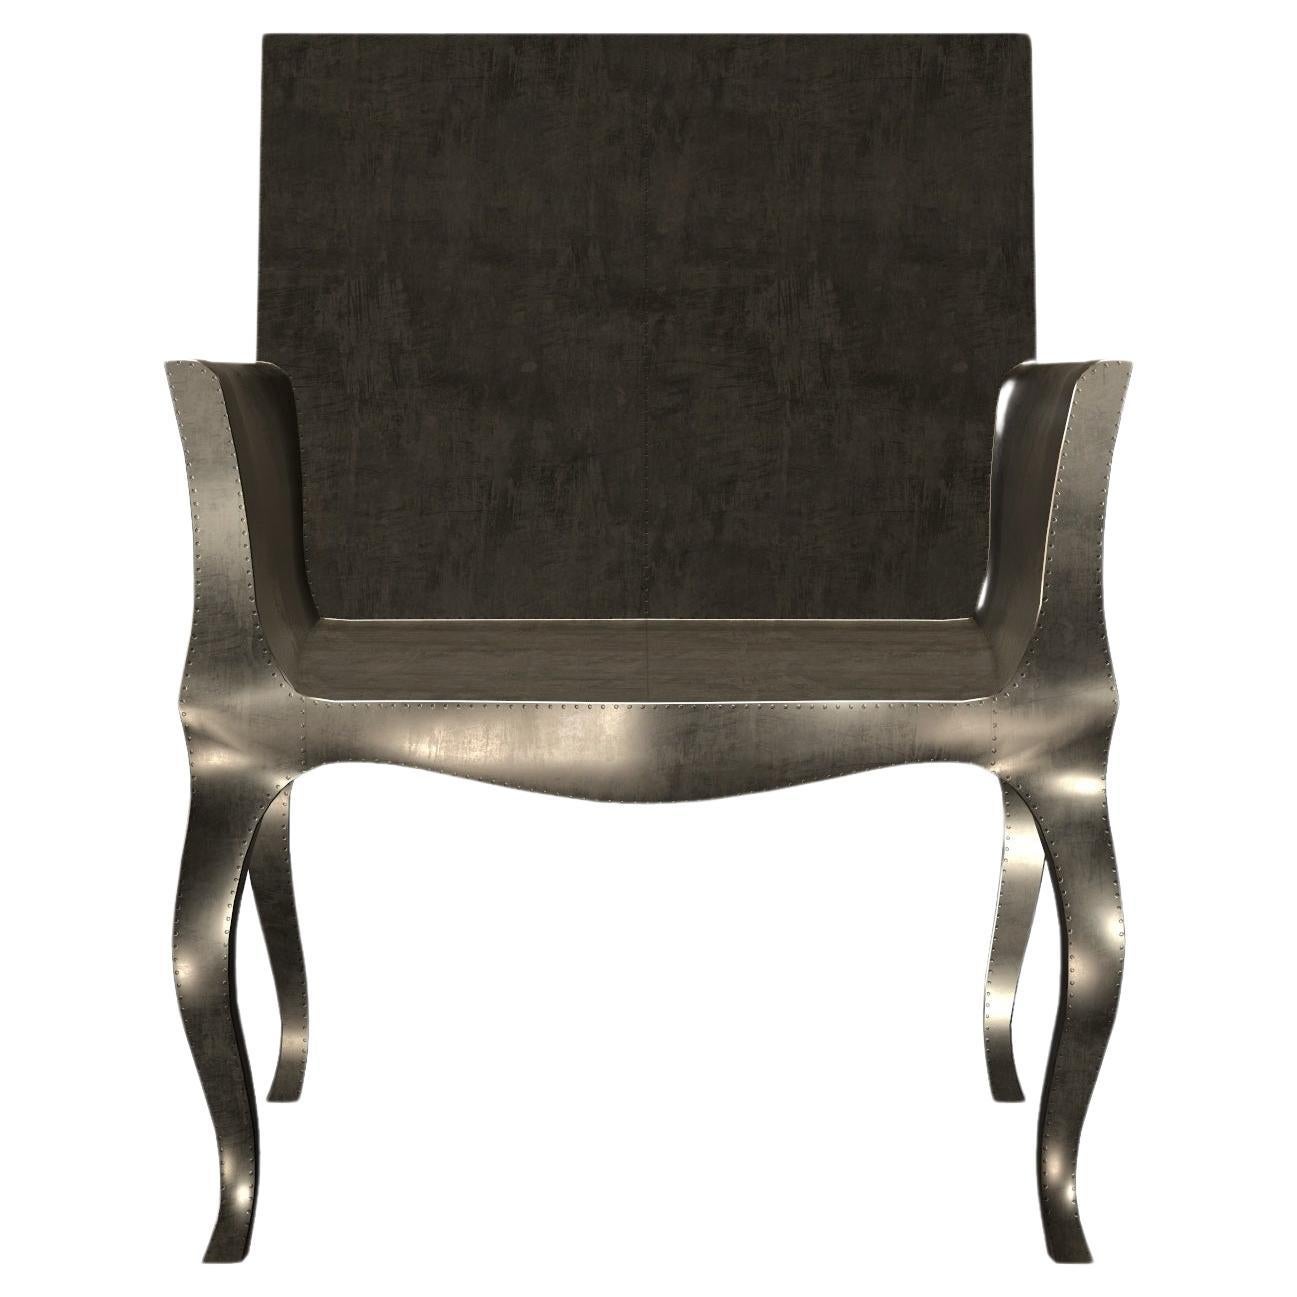 Stühle im Art-Déco-Stil, glatte antike Bronze von Paul Mathieu für S. Odegard